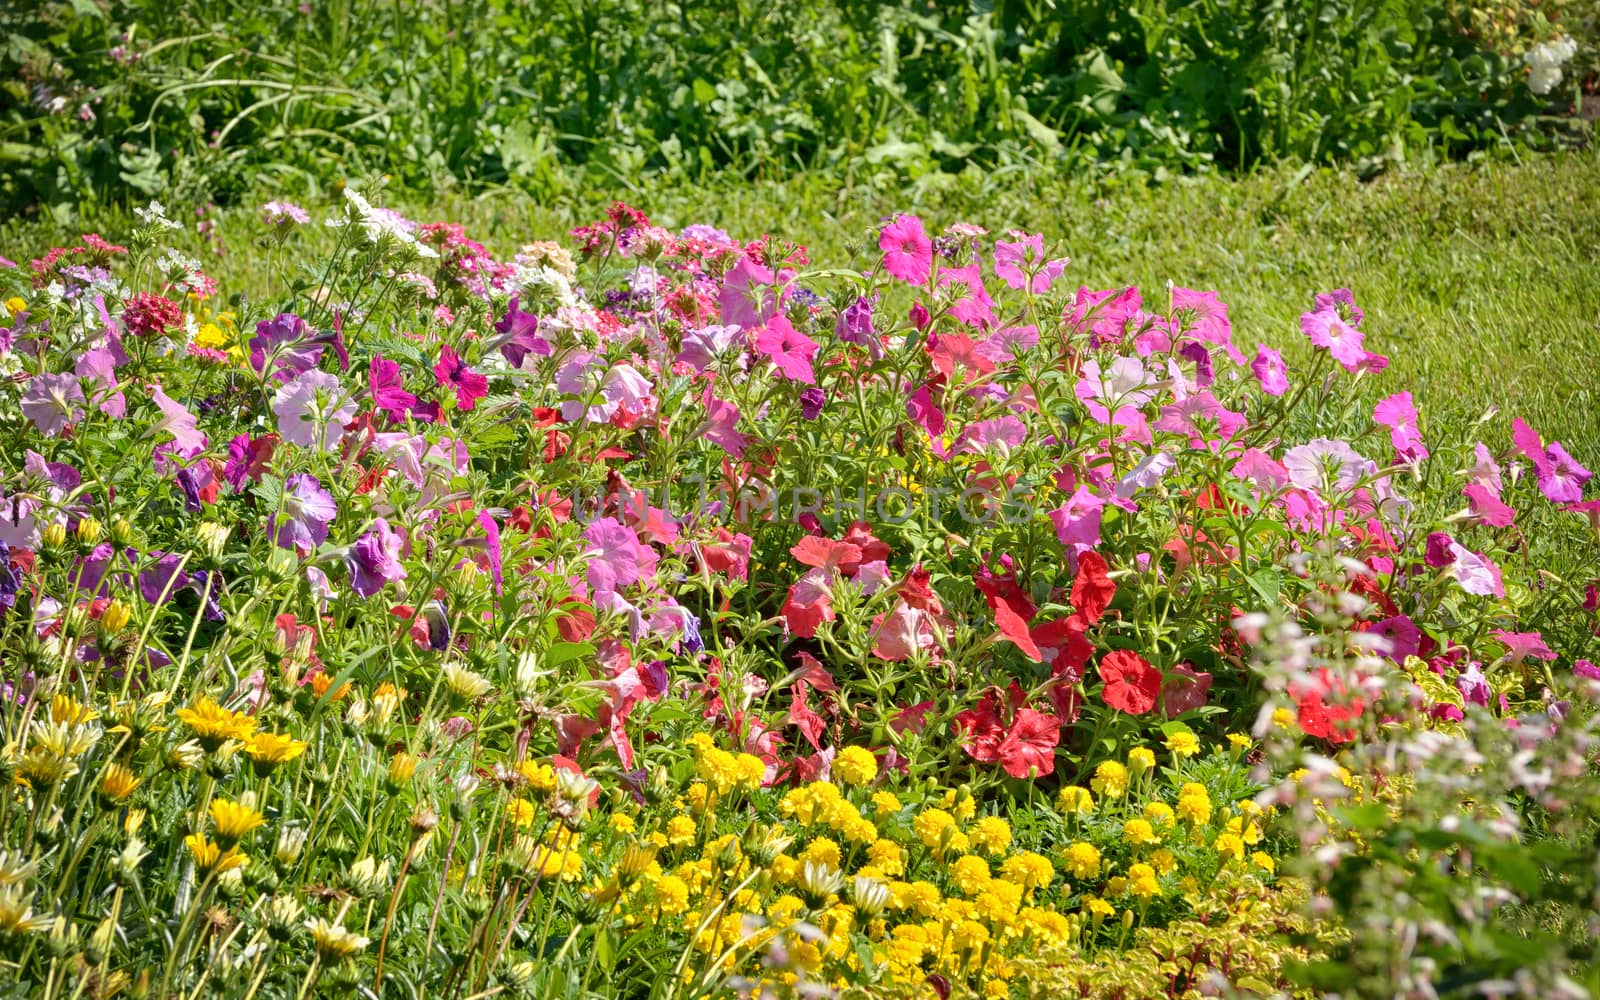 Tobacco flowers in summer garden